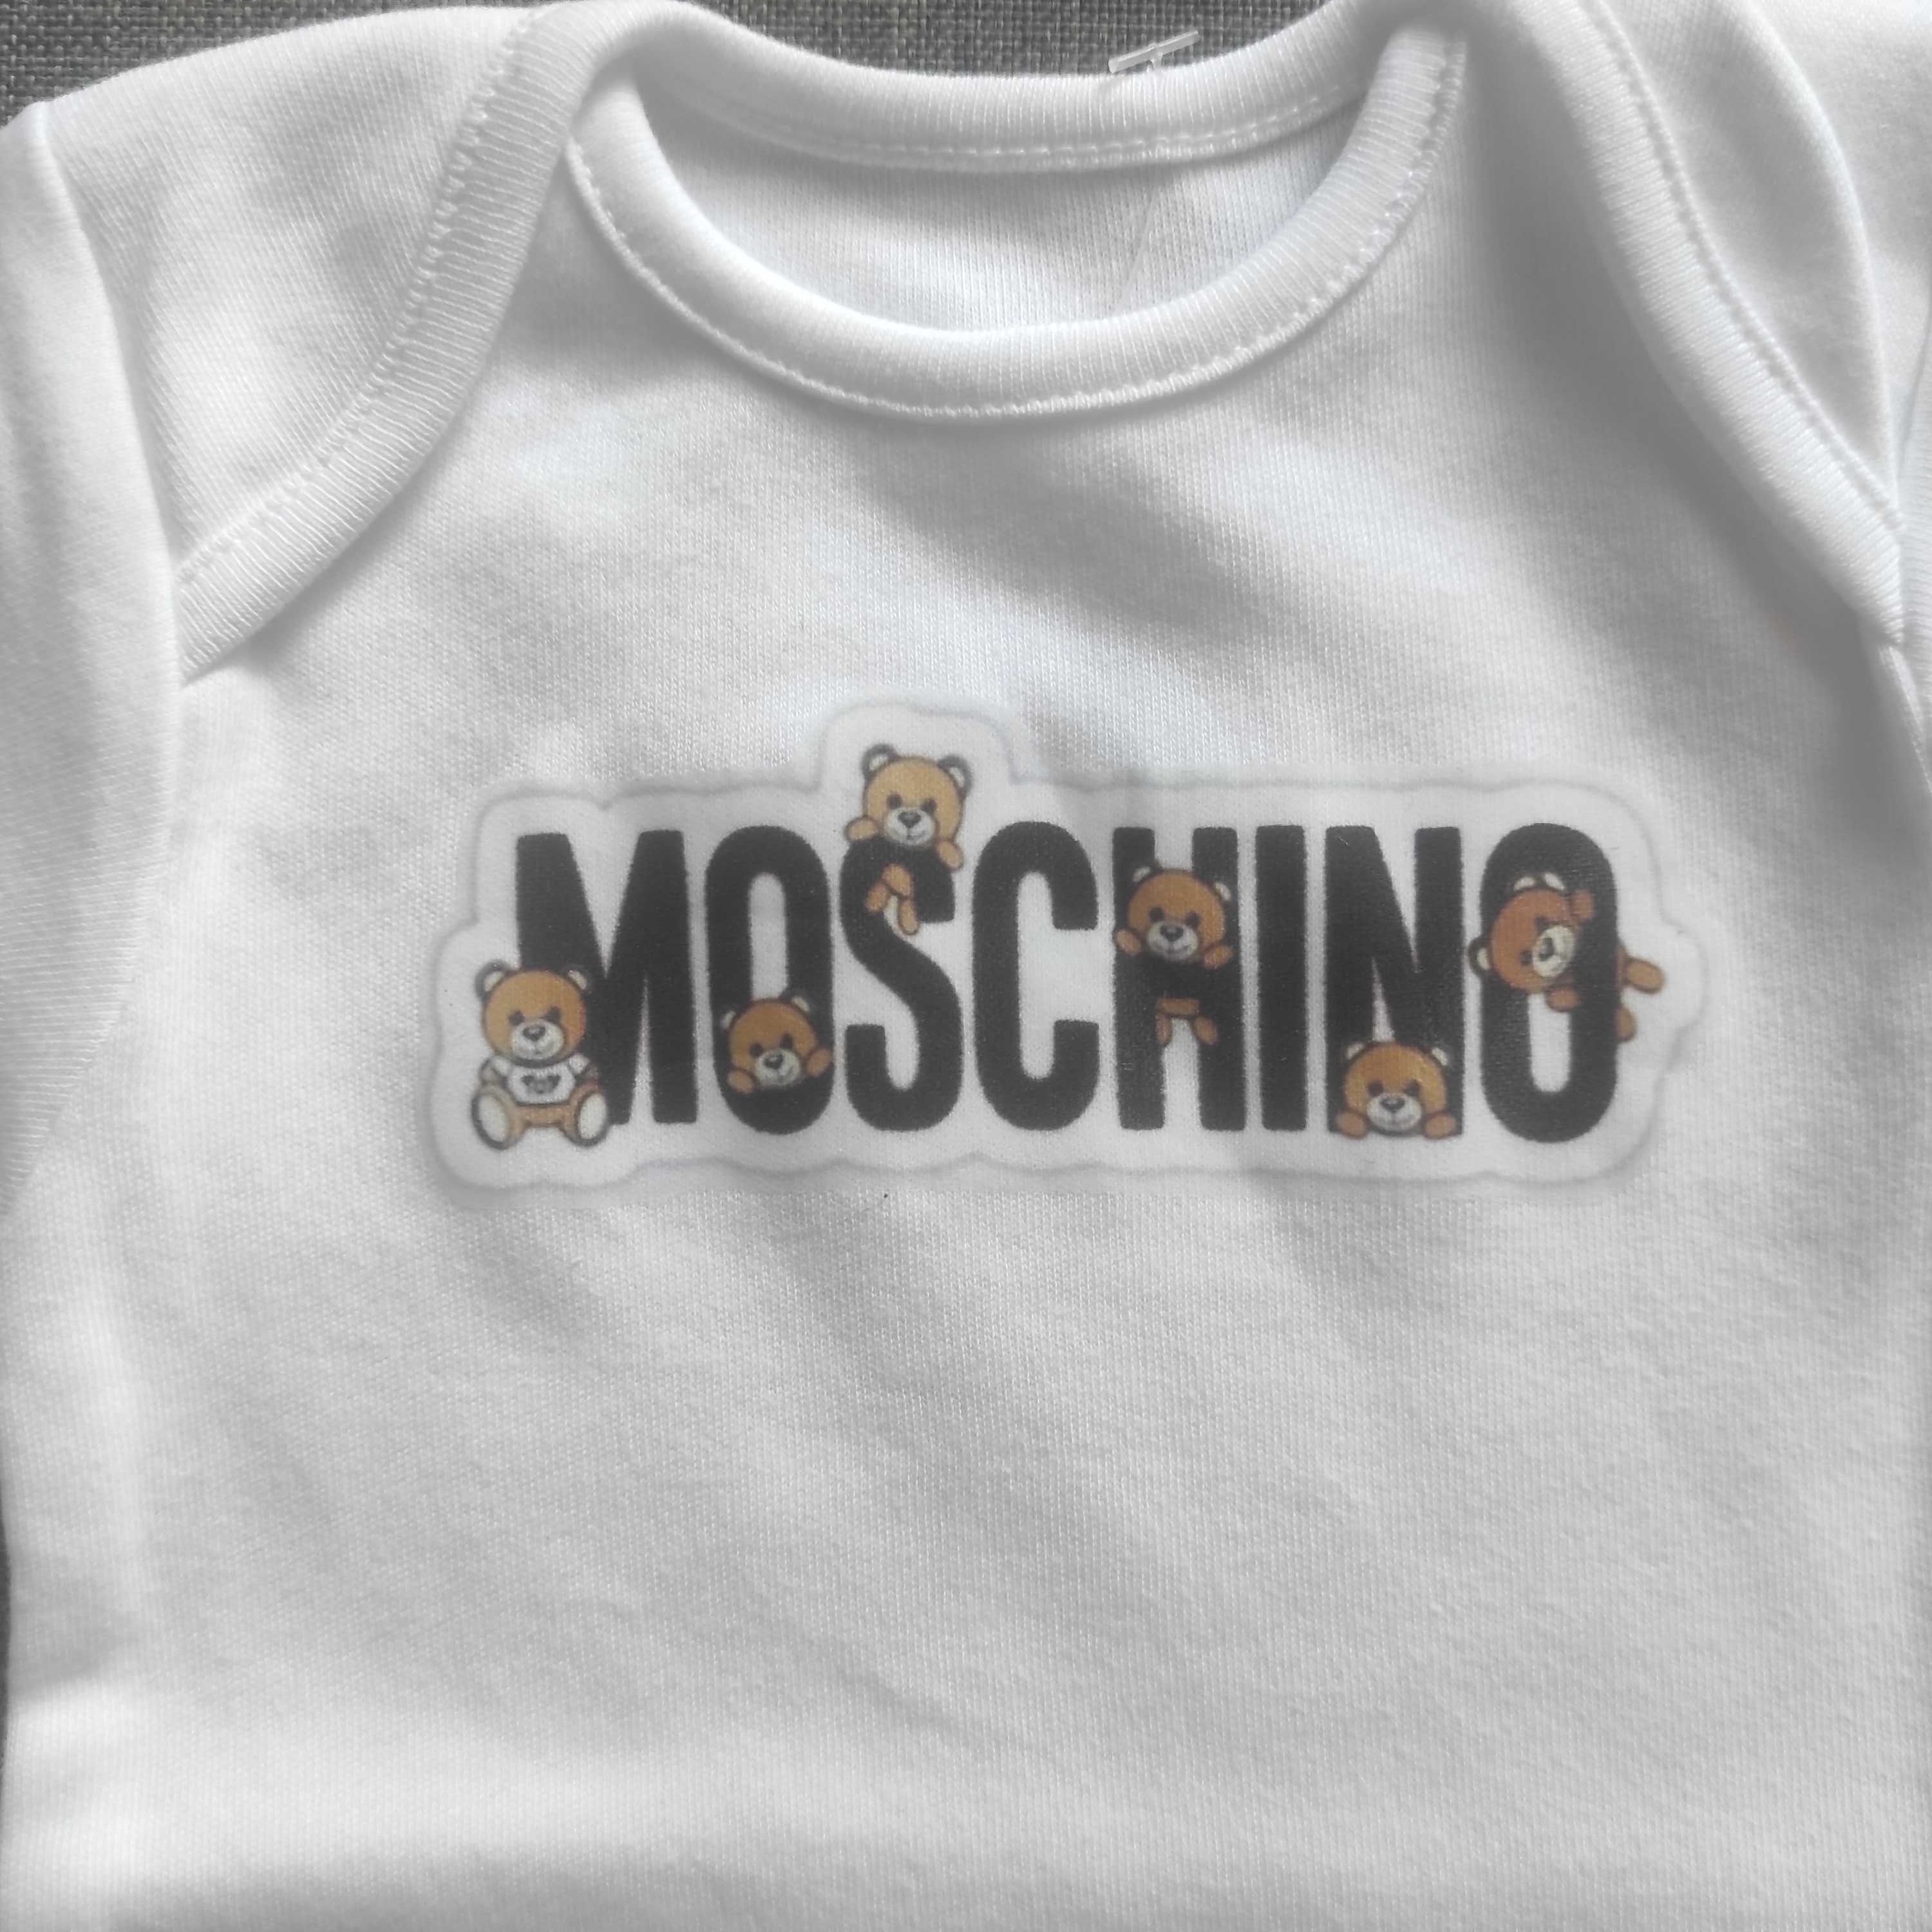 Moschino baby by George body niemowlęce first size 52-56 cm 4,1 kg